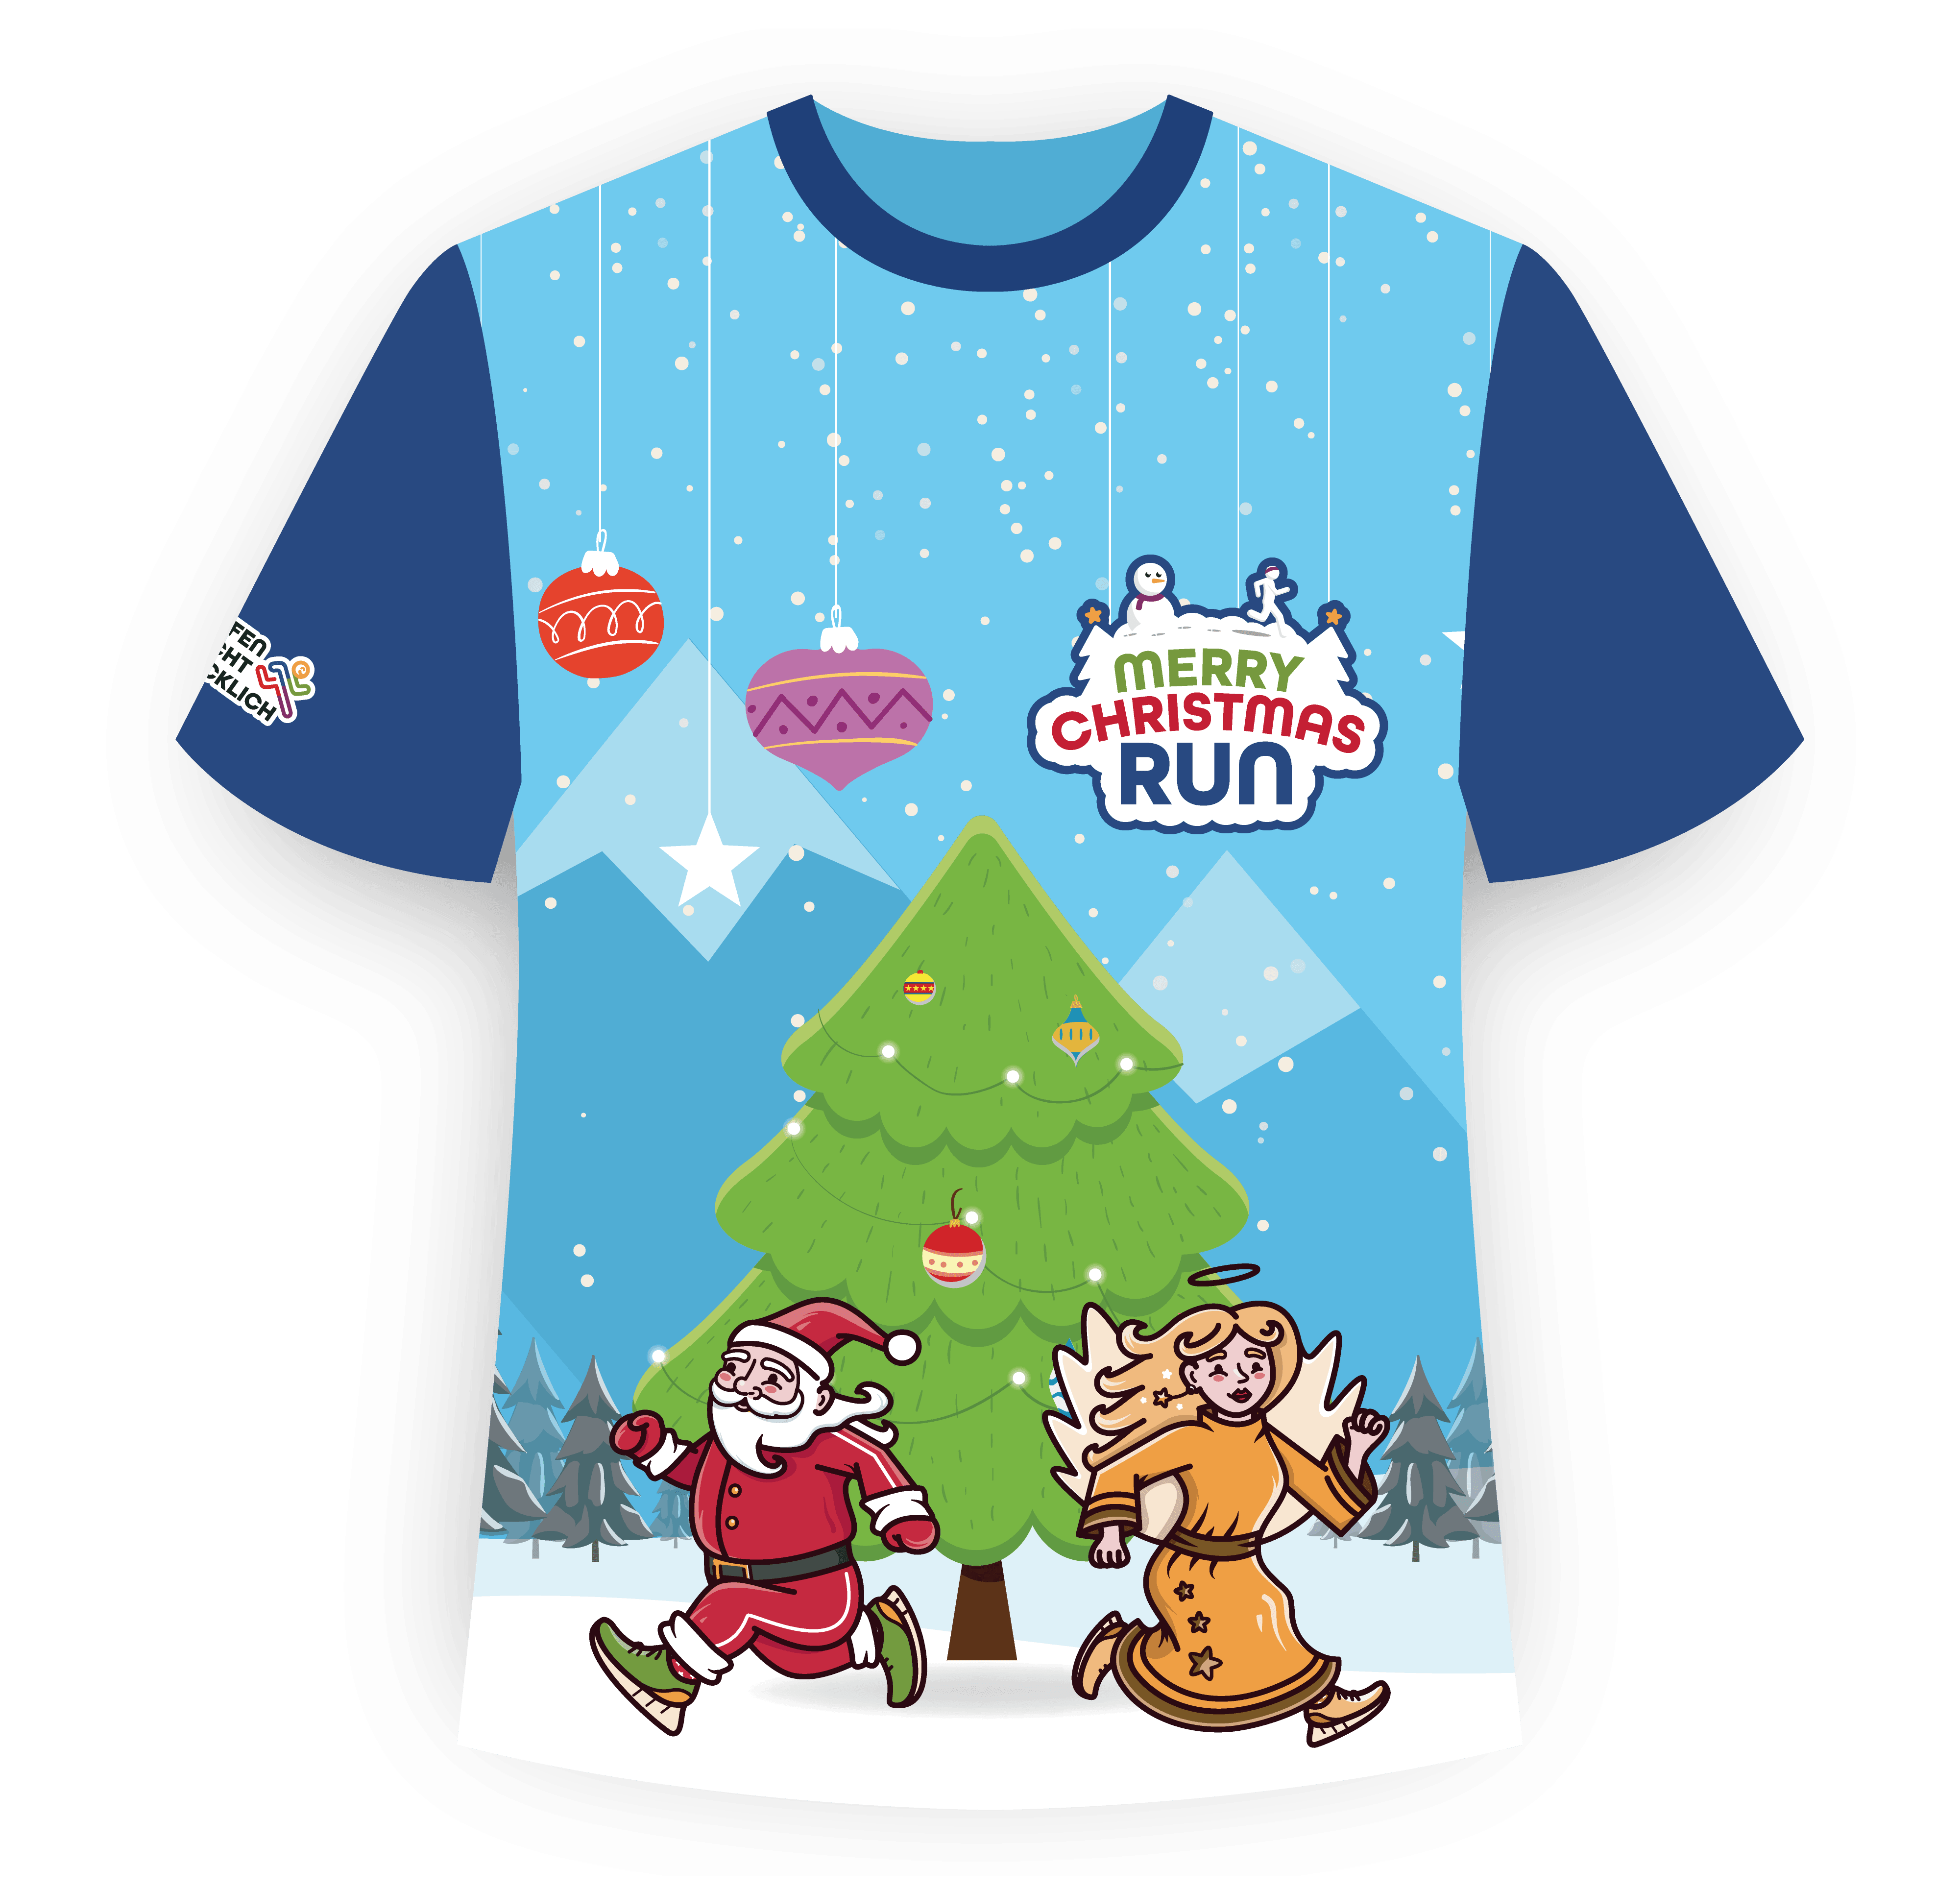 Das Shirt zum Merry Christmas Run 2022